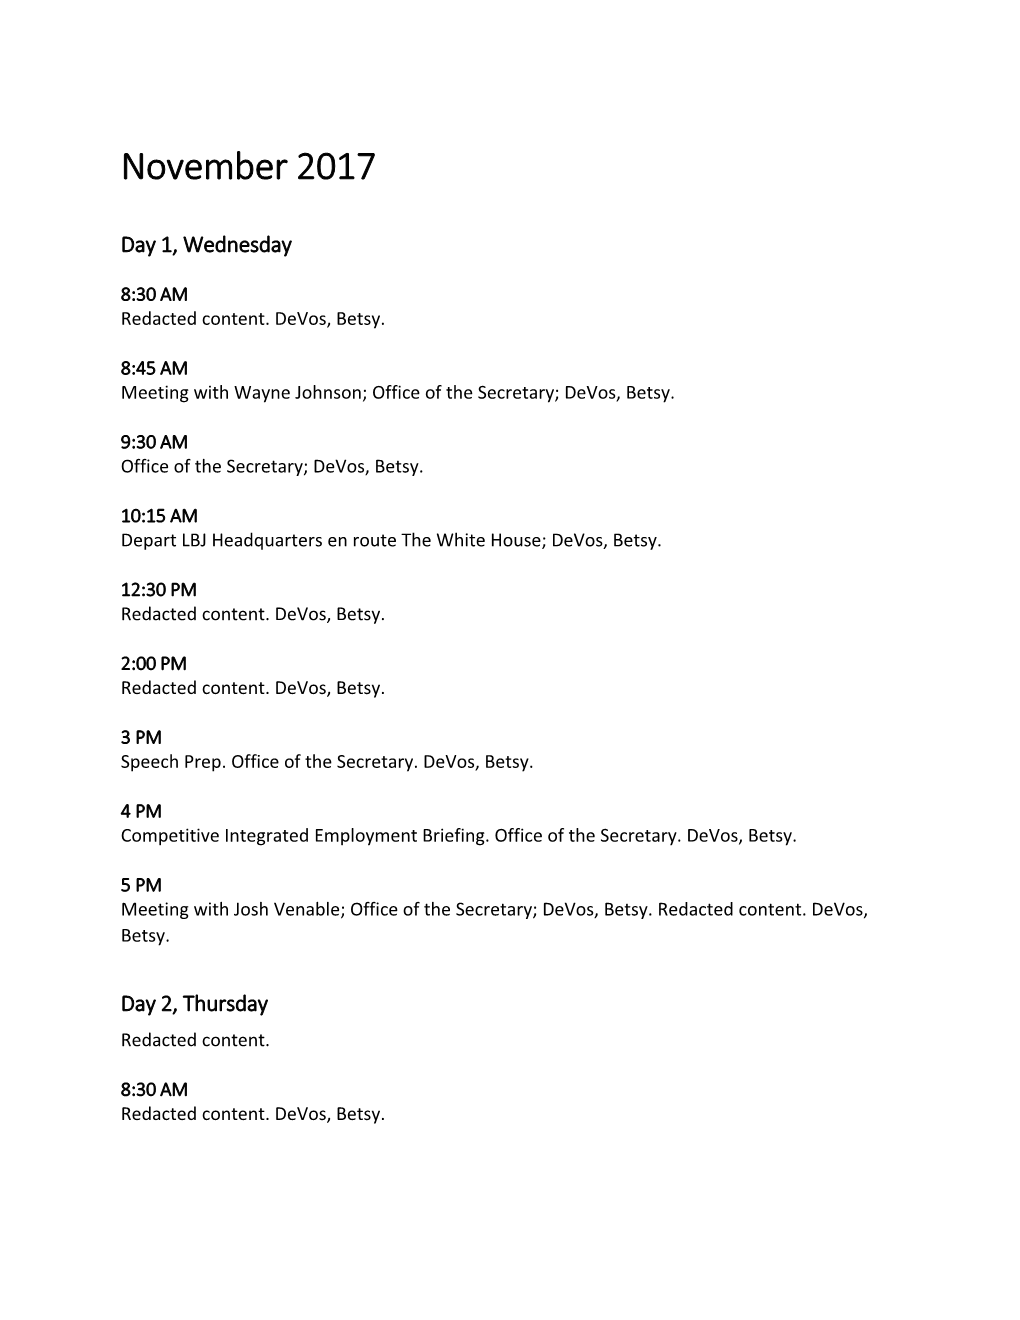 November 2017 - Devos Calendar Redacted (MS Word)